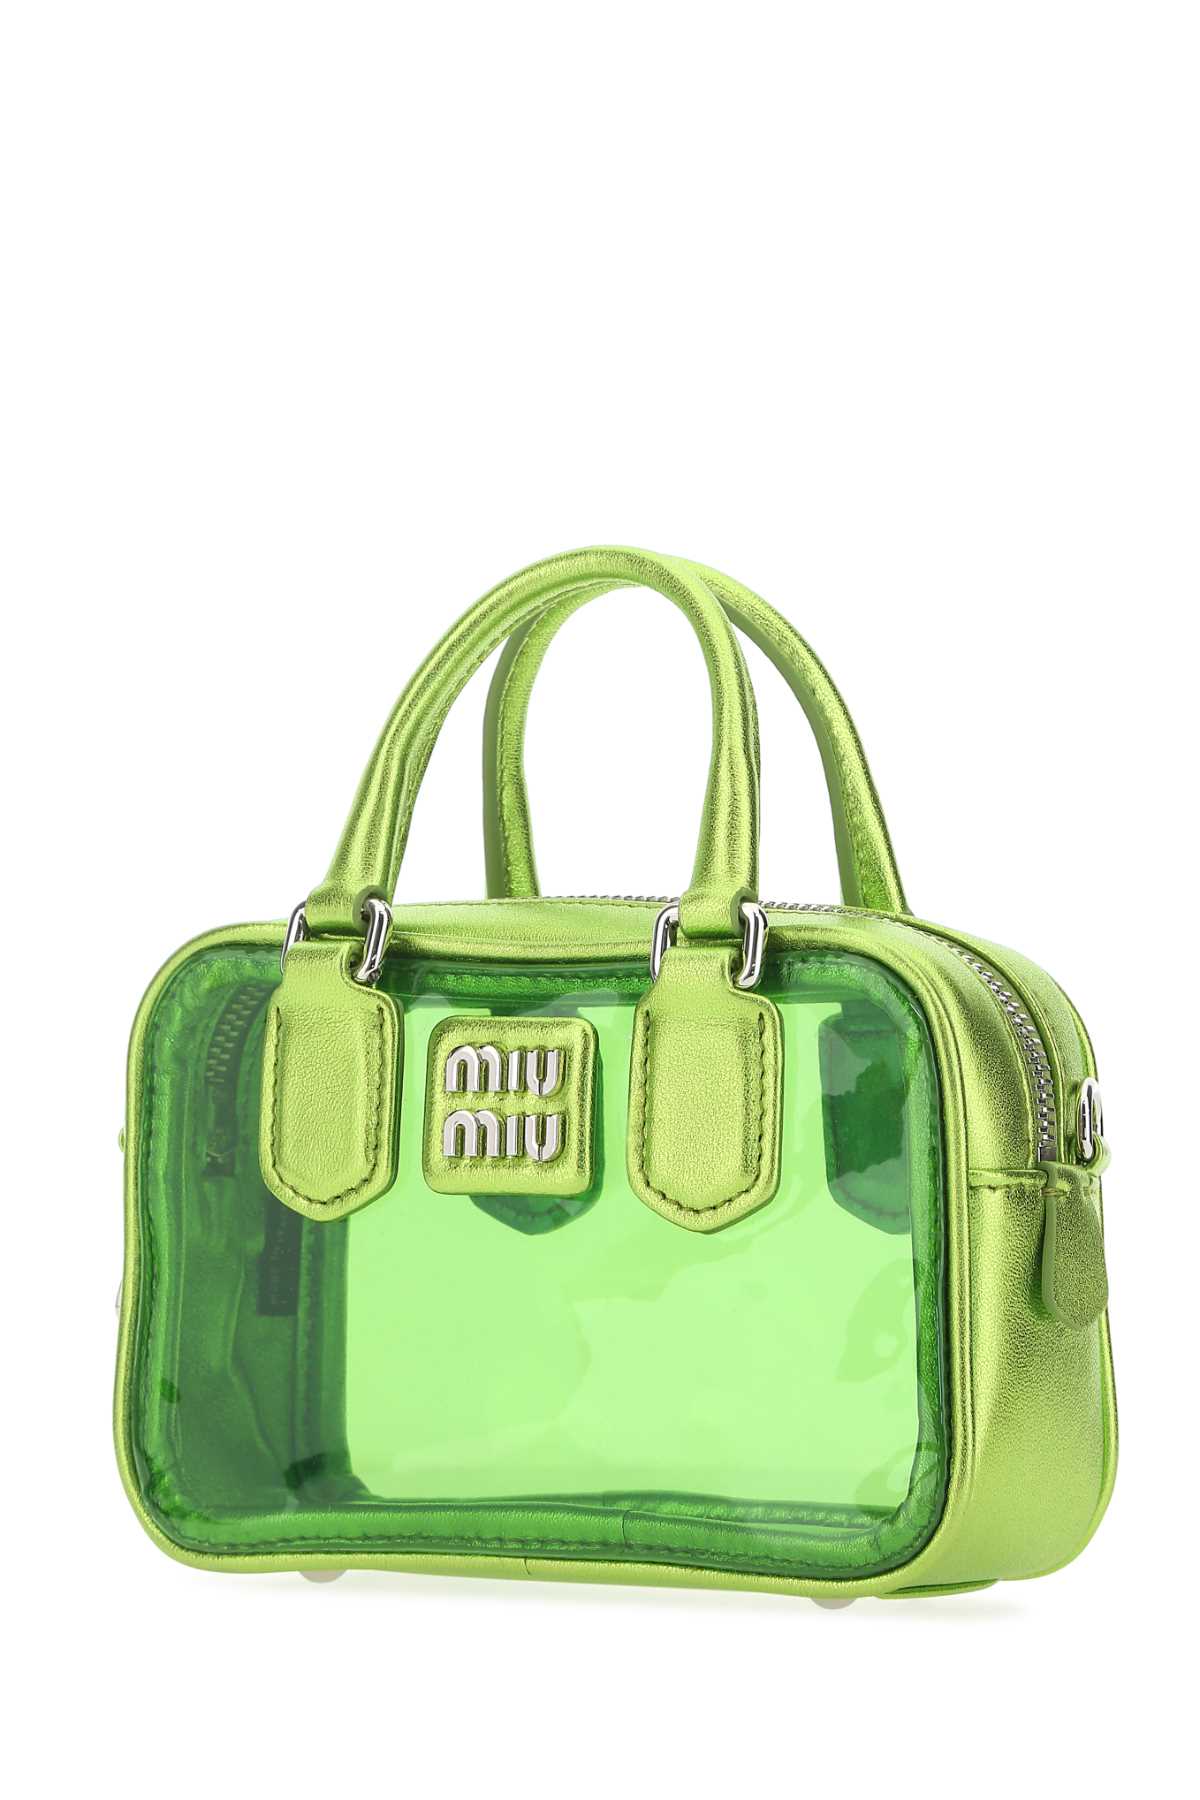 Miu Miu Green Leather And Pvc Mini Handbag In F03bq